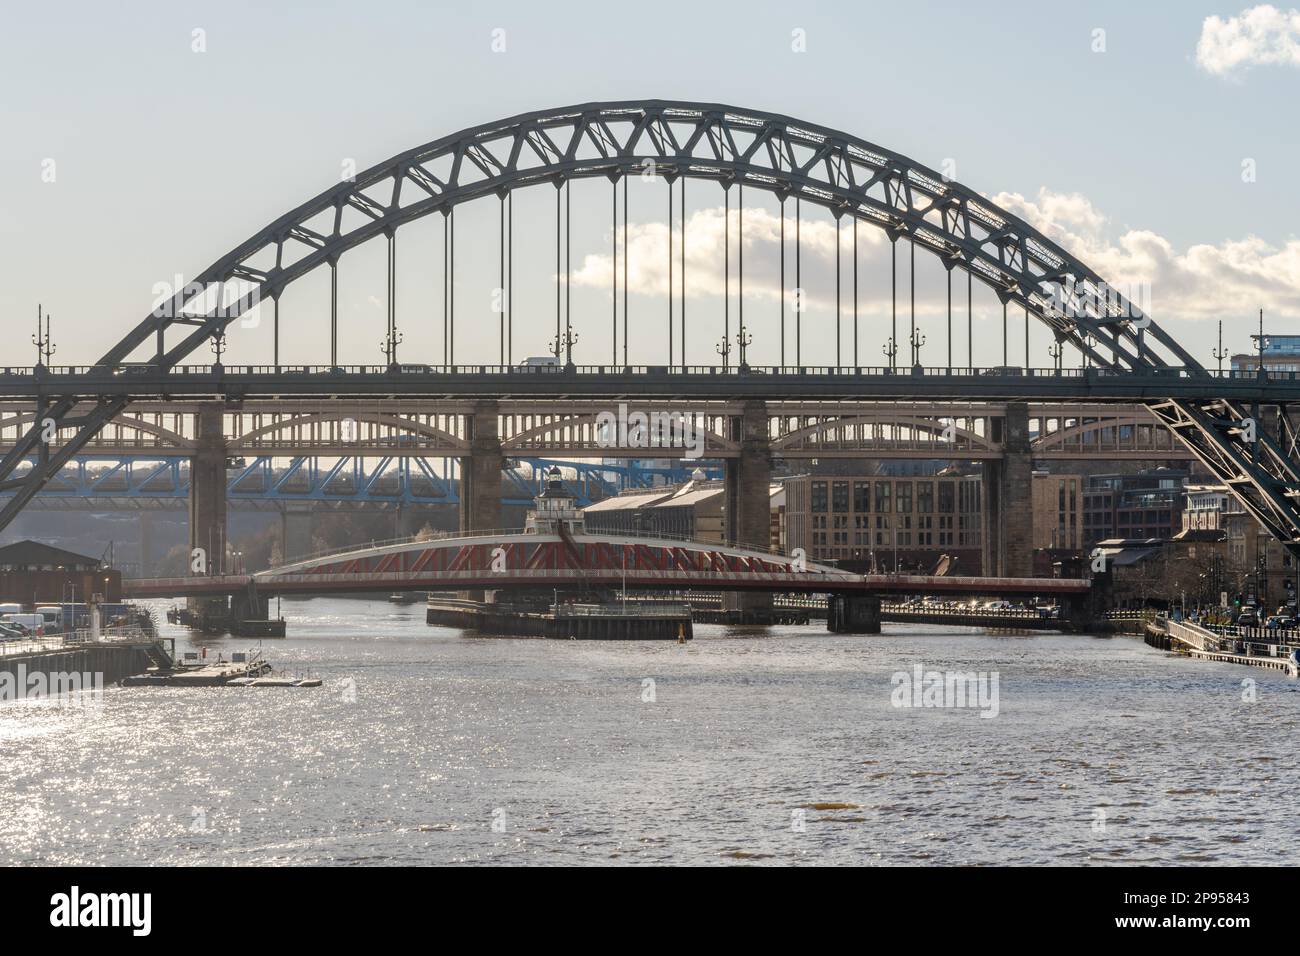 Vue sur le pont Tyne traversant la rivière jusqu'à Gateshead, avec les ponts Swing, High Level et Queen Elizabeth II alignés. Newcastle upon Tyne, Royaume-Uni. Banque D'Images